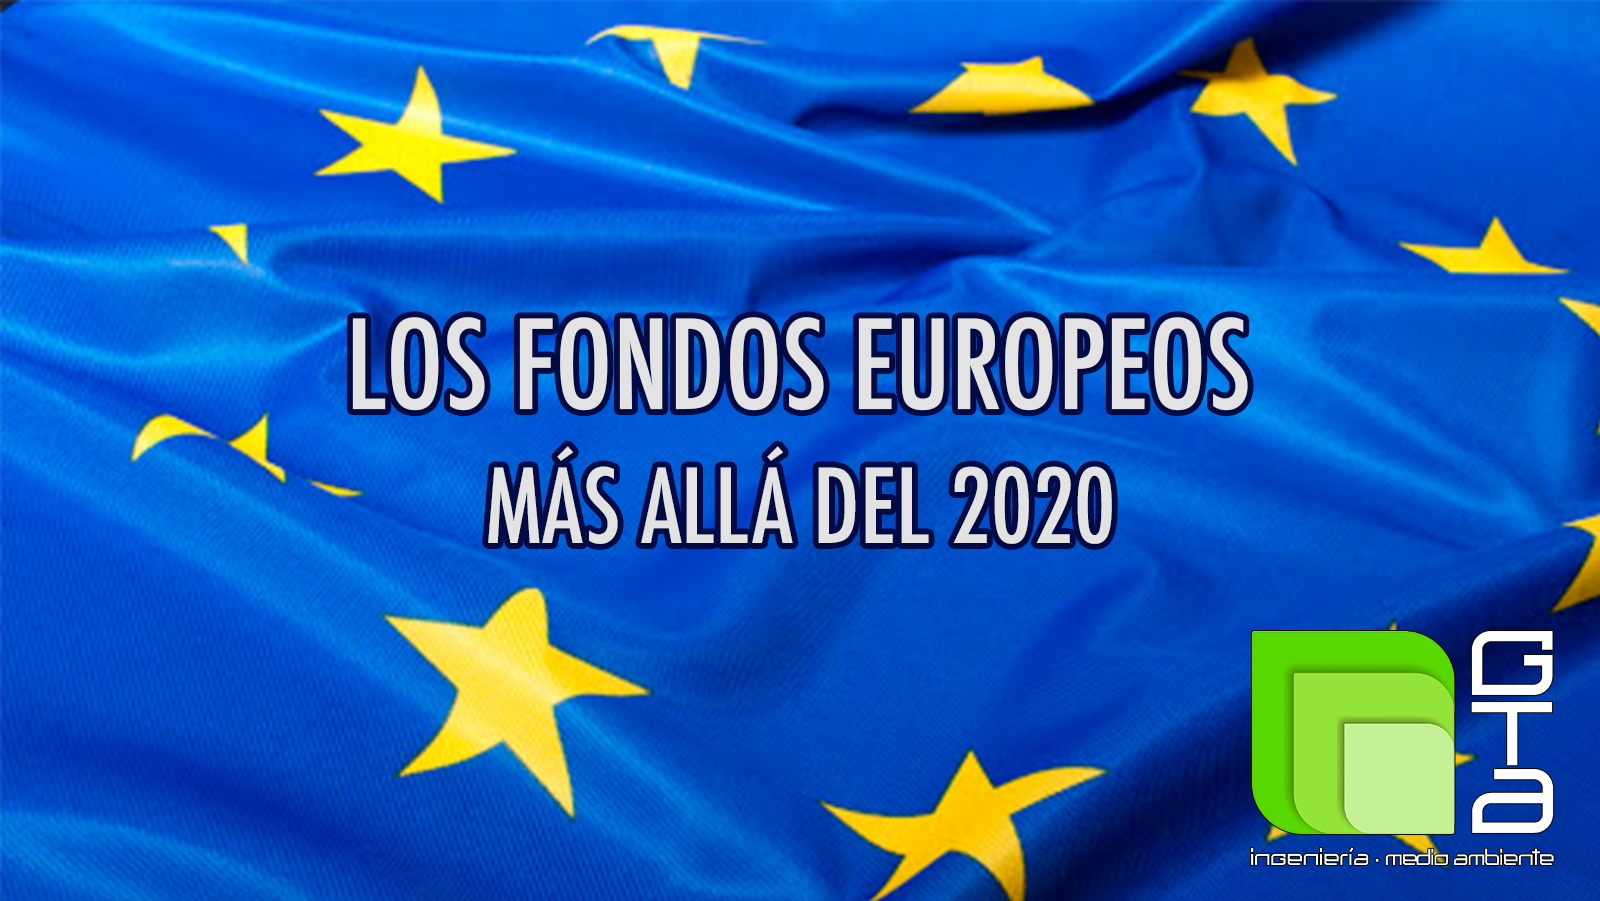 Los fondos europeos más allá del 2020